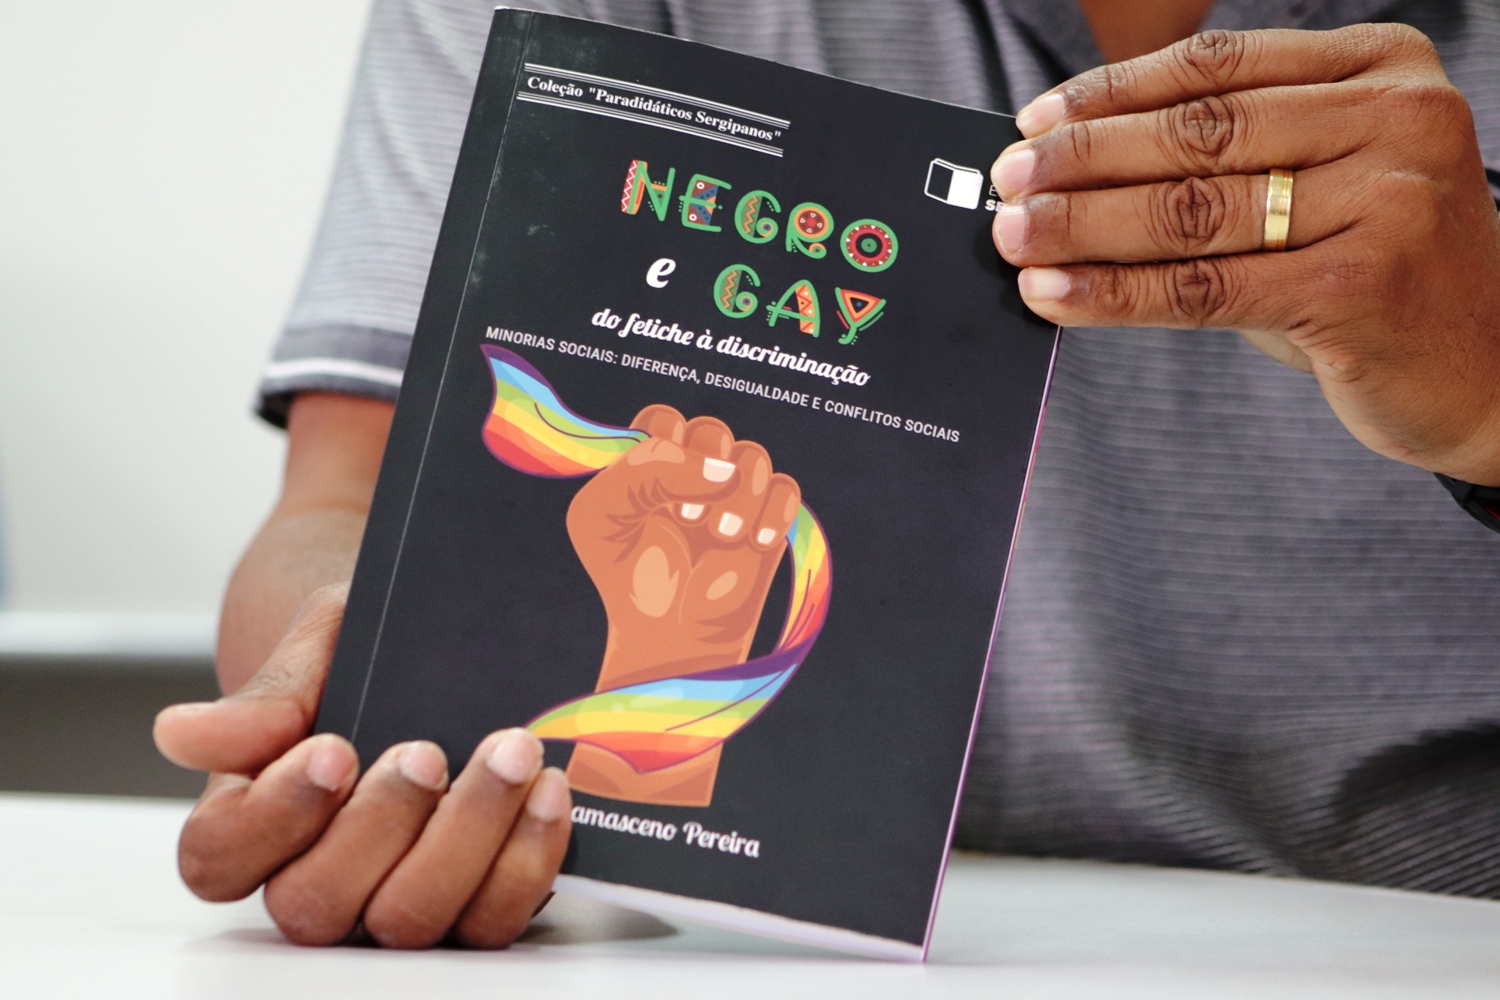 Dissertação sobre interseção entre questões de gênero e cor virou livro. Foto: Josafá Neto/Rádio UFS